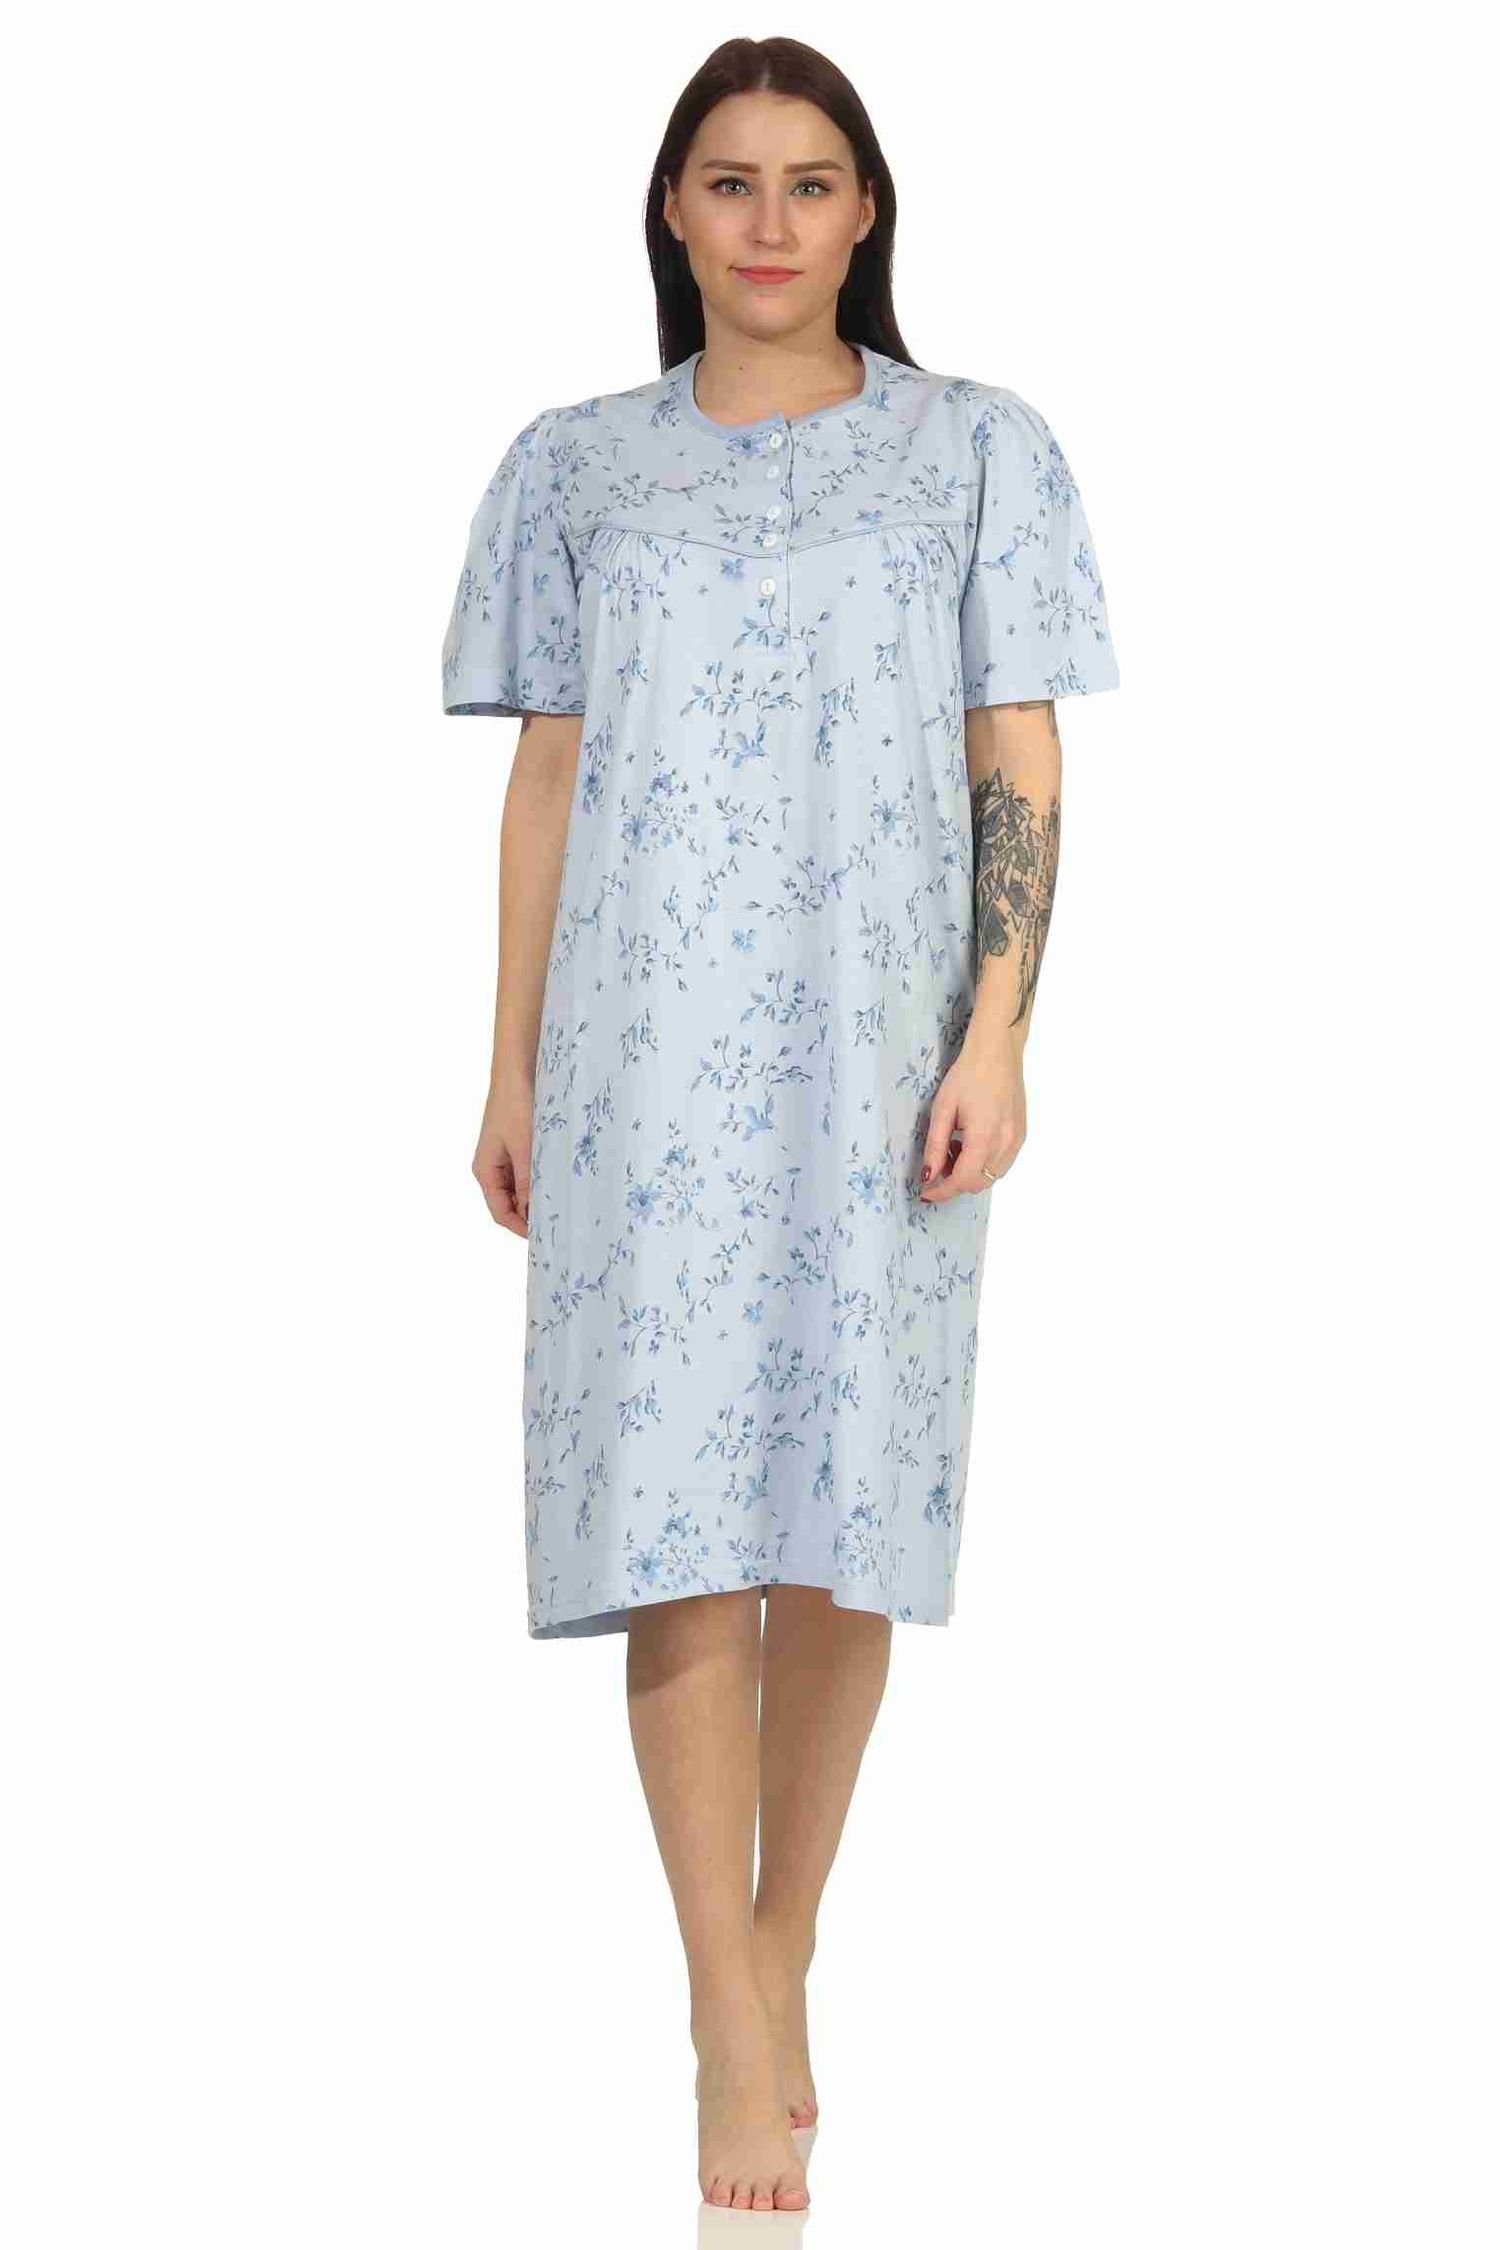 RELAX by Normann Nachthemd Frauliches Damen Nachthemd mit Knopfleiste in cm Länge hellblau